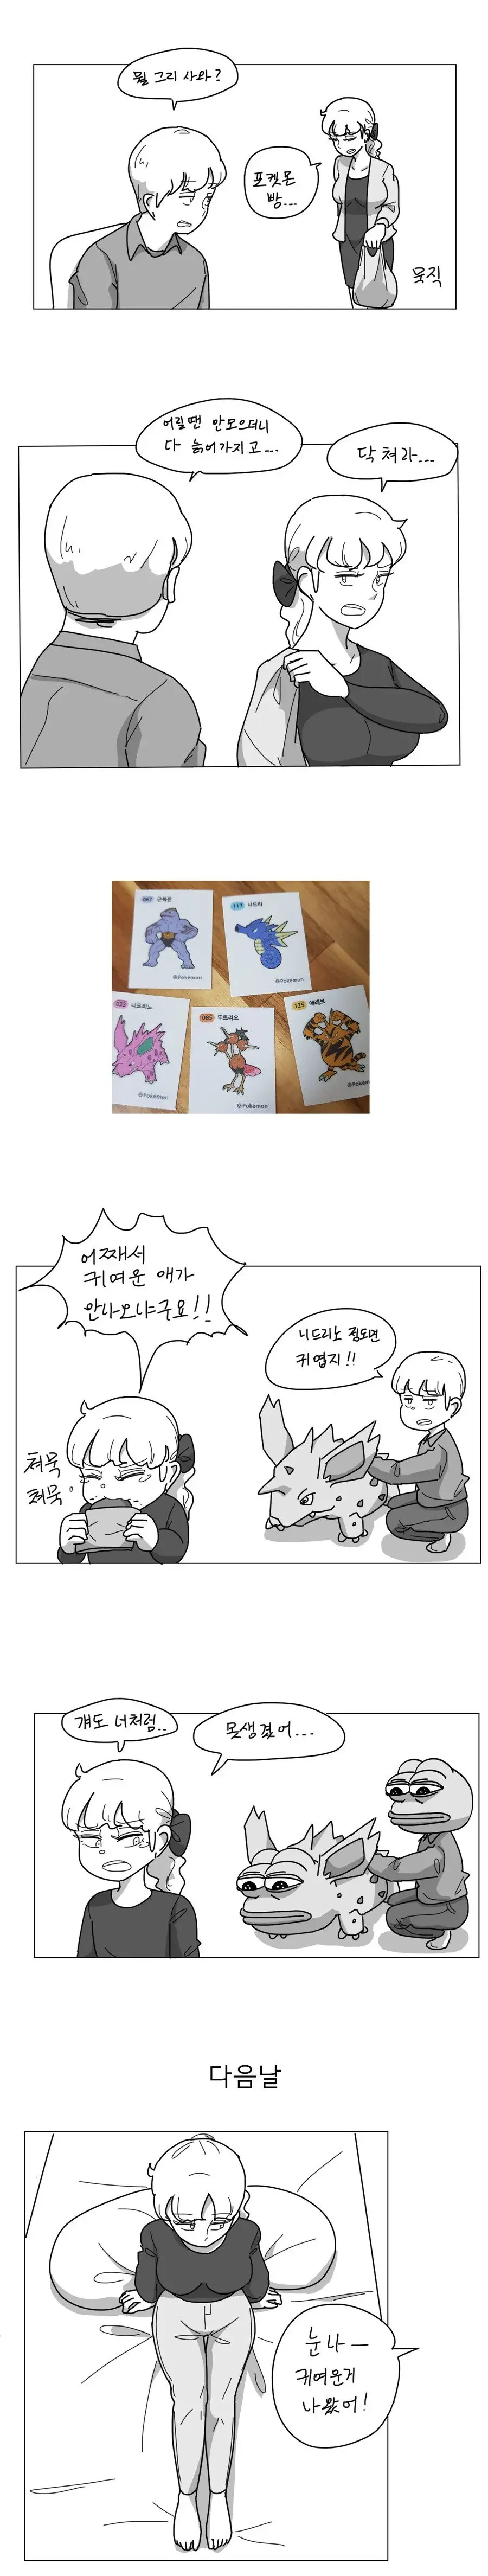 오싹오싹 누나가 포켓몬빵 사들고오는 만화.manhwa | mbong.kr 엠봉